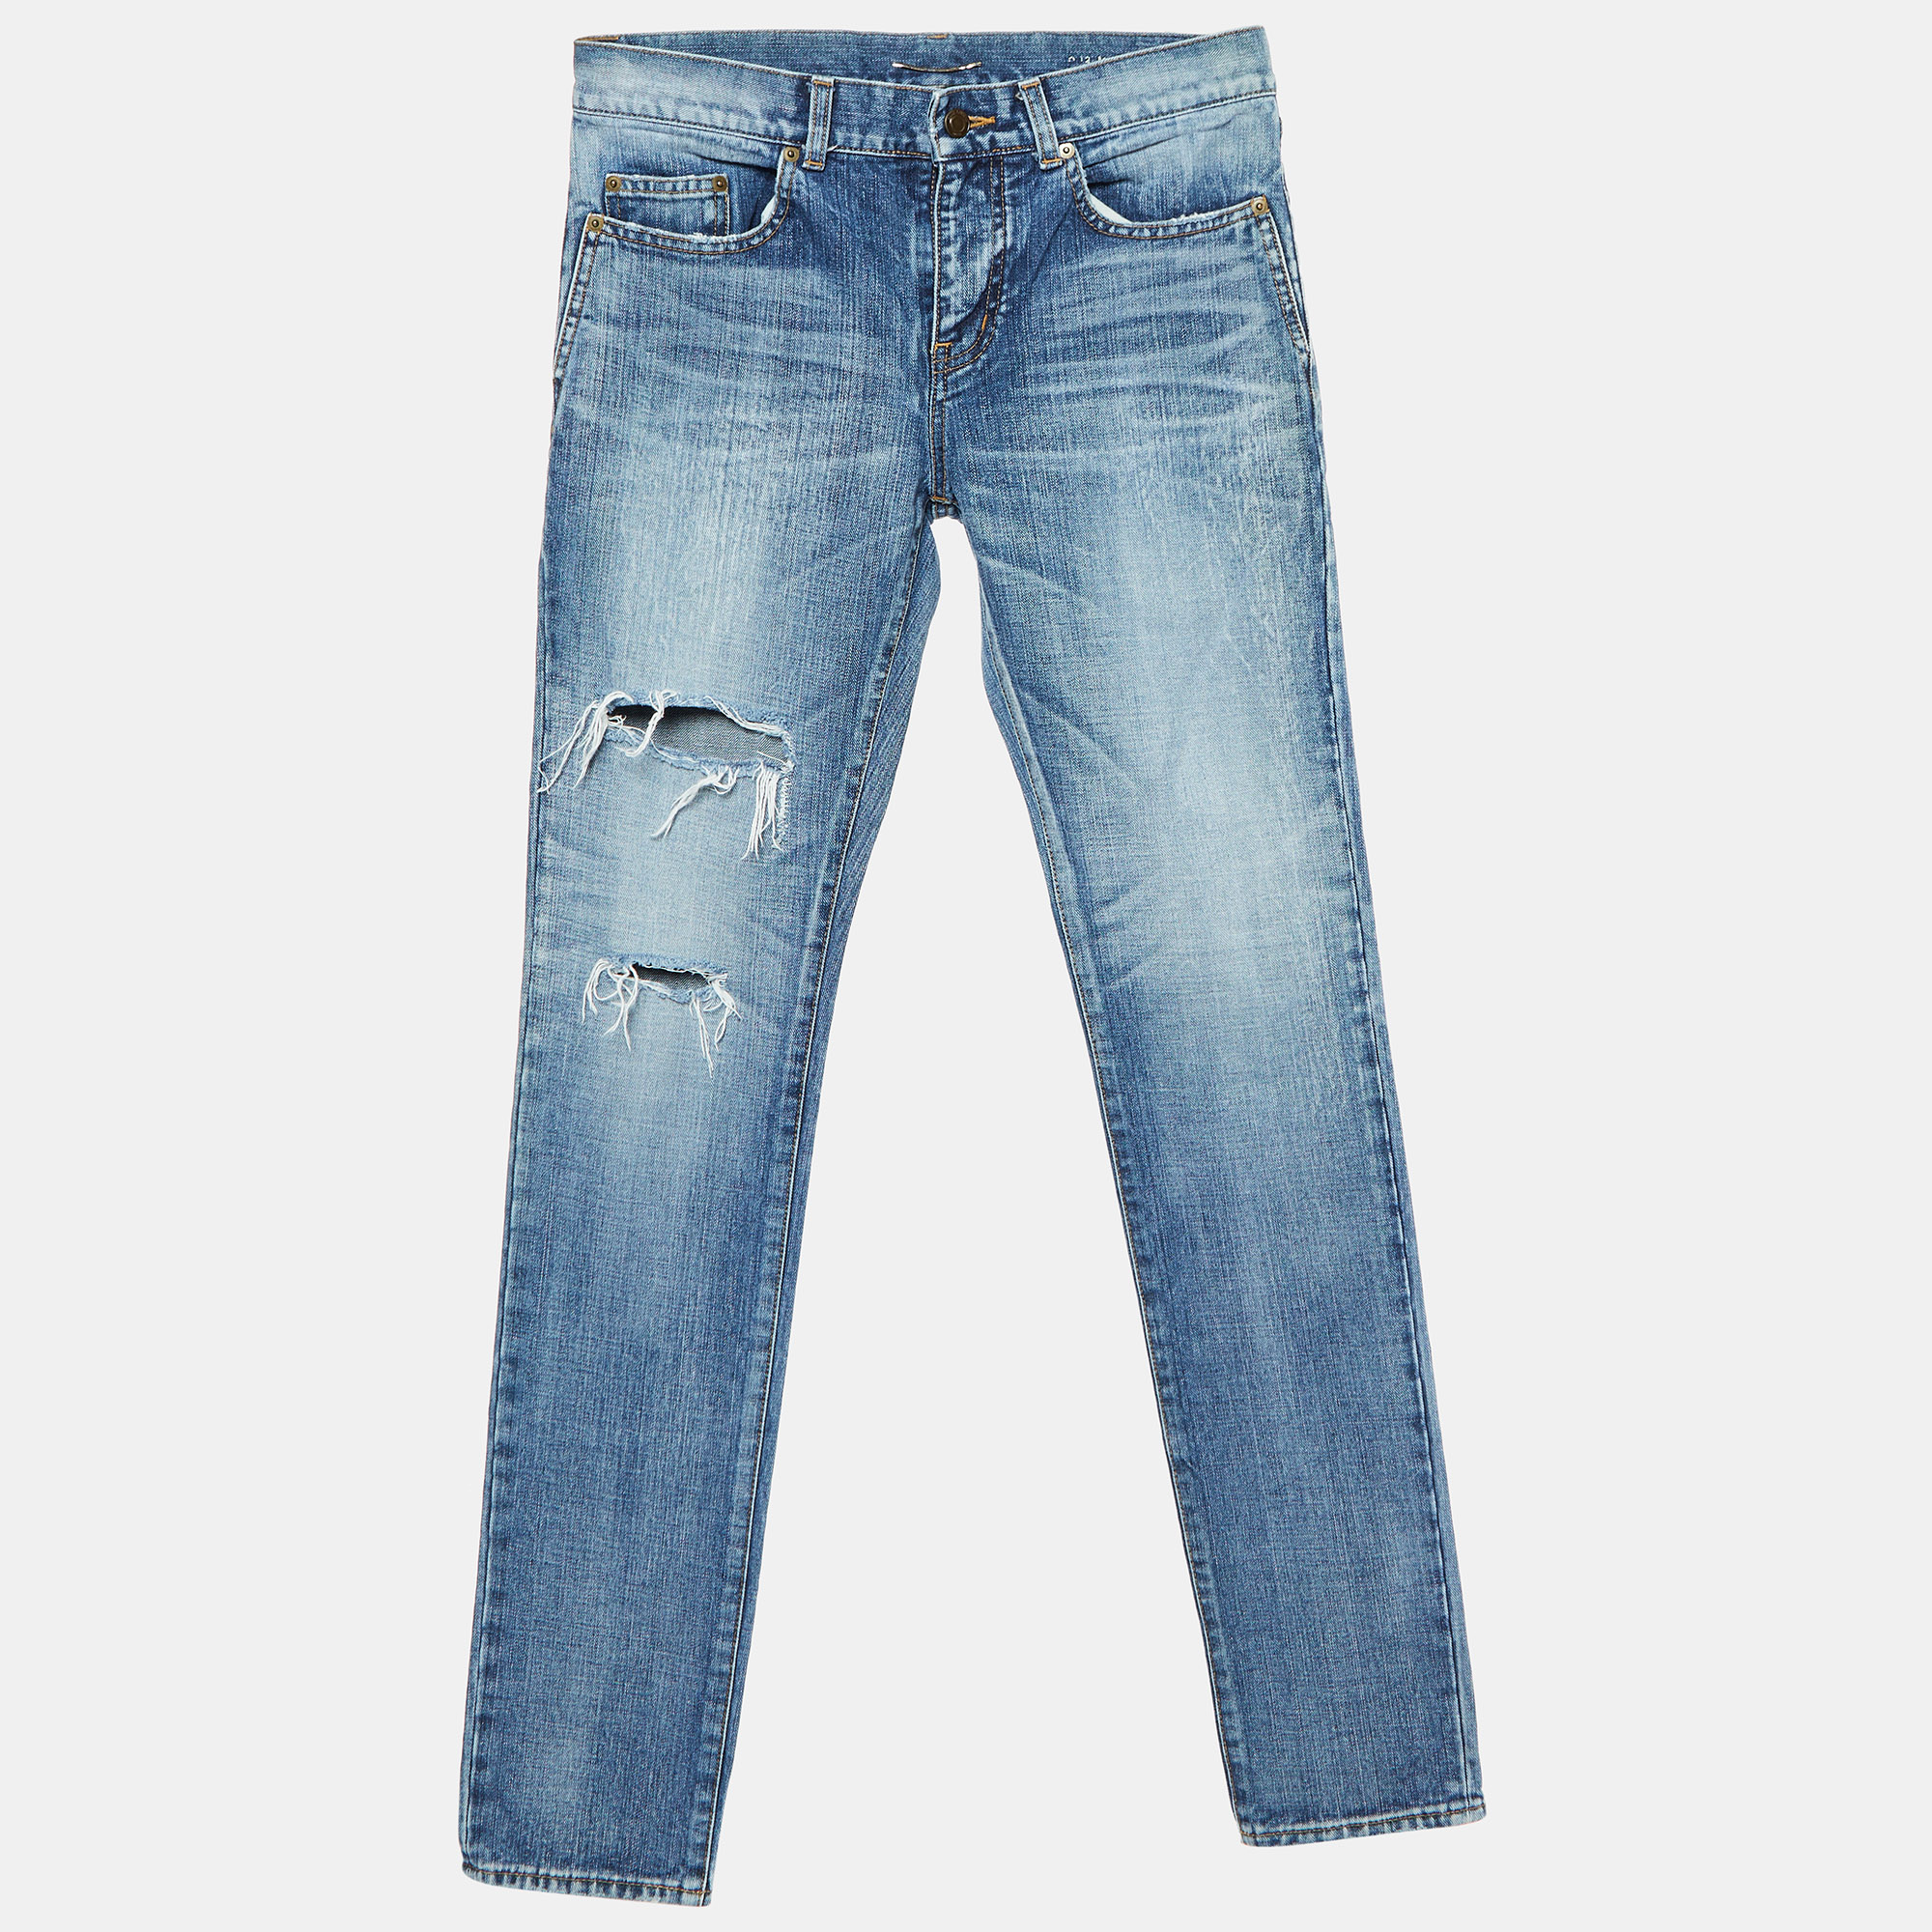 

Saint Laurent Paris Blue Washed & Distressed Denim Jeans S Waist 31"